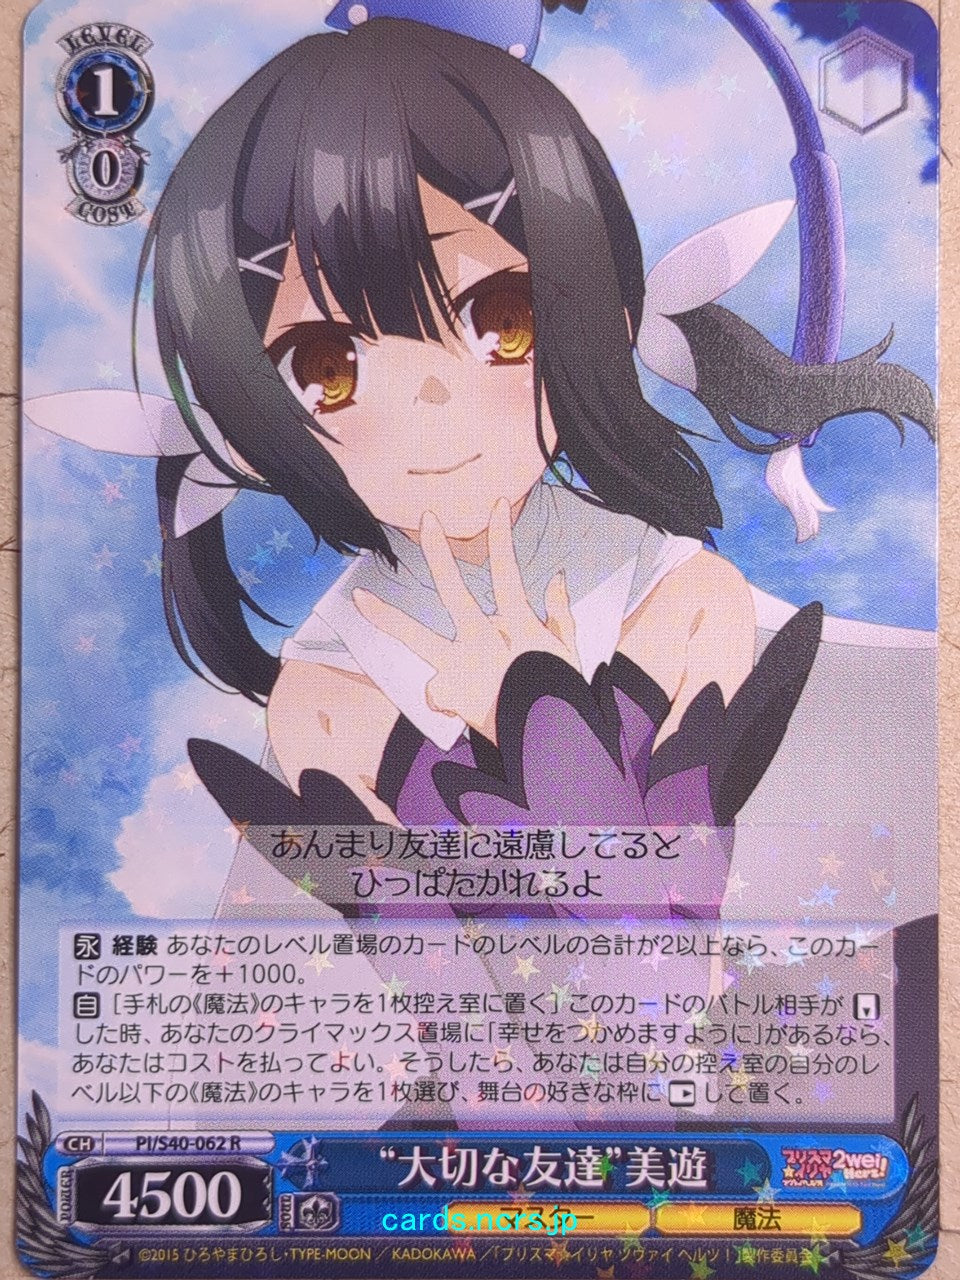 Weiss Schwarz Fate/kaleid linier Prisma Illya -Miyu-   Trading Card PI/S40-062R